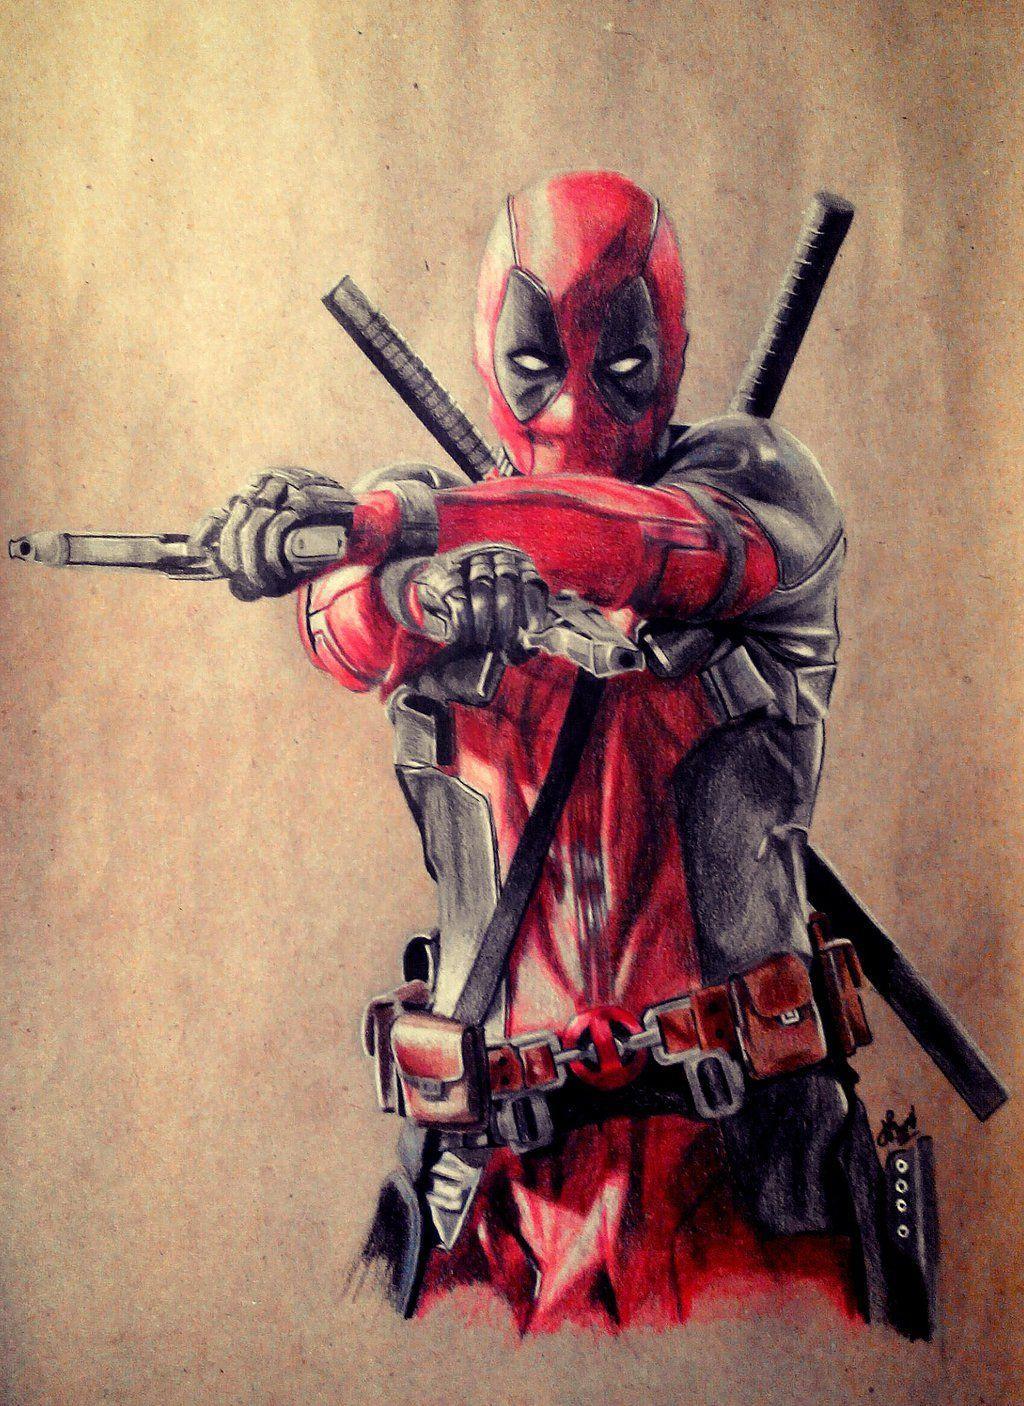 Deadpool #Fan #Art. (Deadpool, Ryan Reynolds) By: Jouck